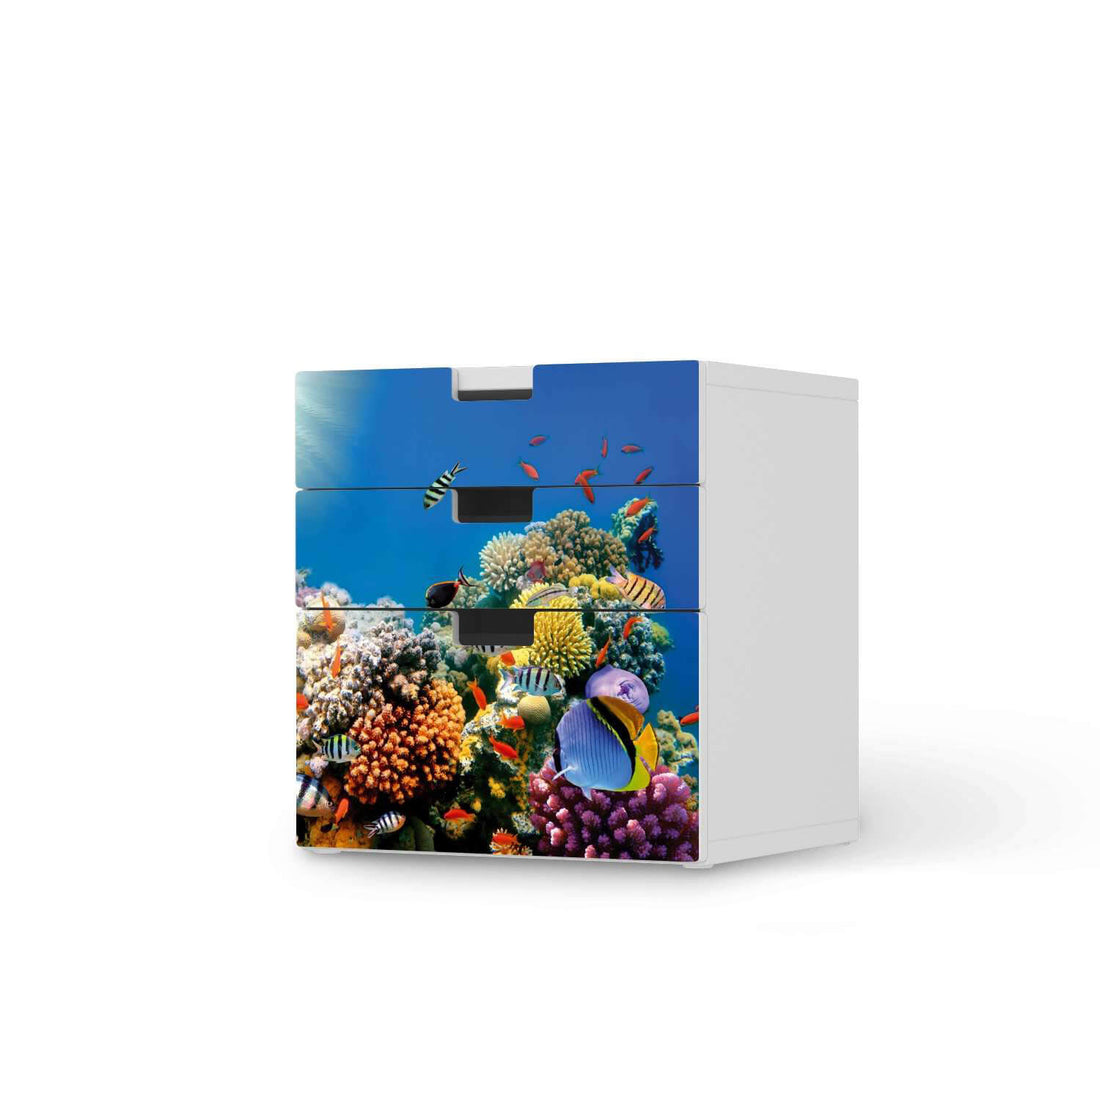 Folie für Möbel Coral Reef - IKEA Stuva Kommode - 3 Schubladen (Kombination 1)  - weiss